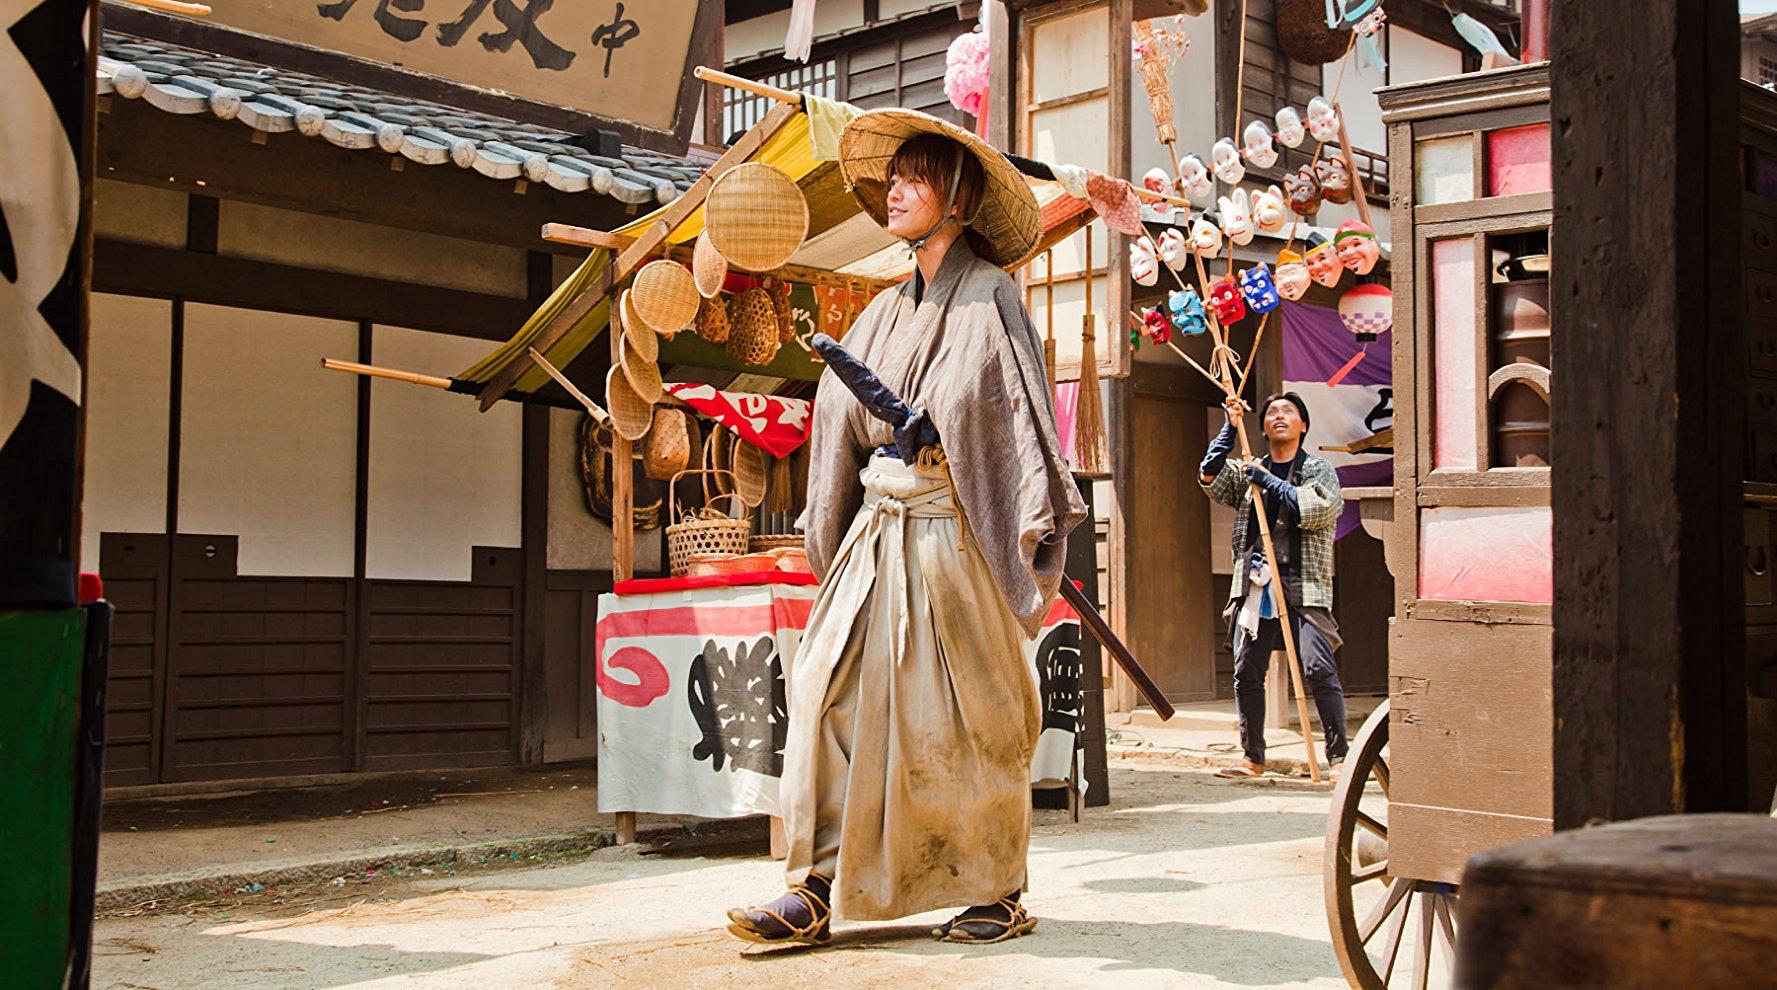 مشاهدة فيلم Rurouni Kenshin 2012 مترجم HD اون لاين